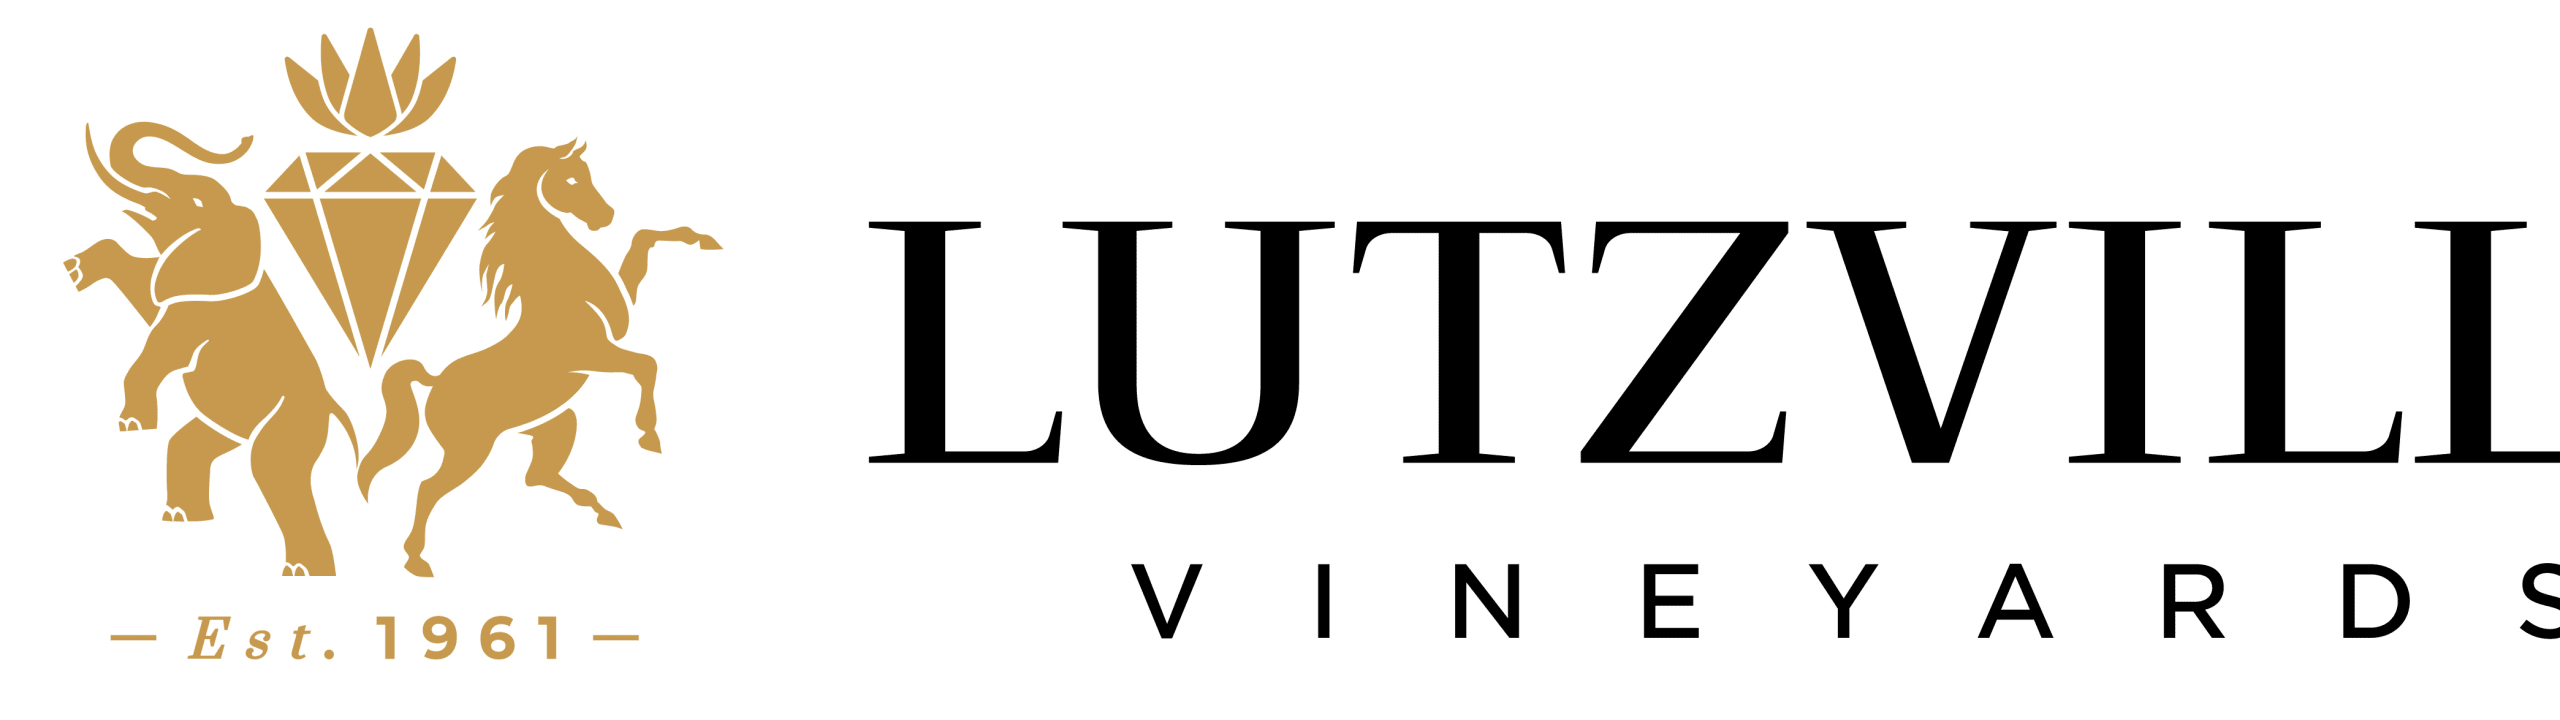 Lutzville Vineyards